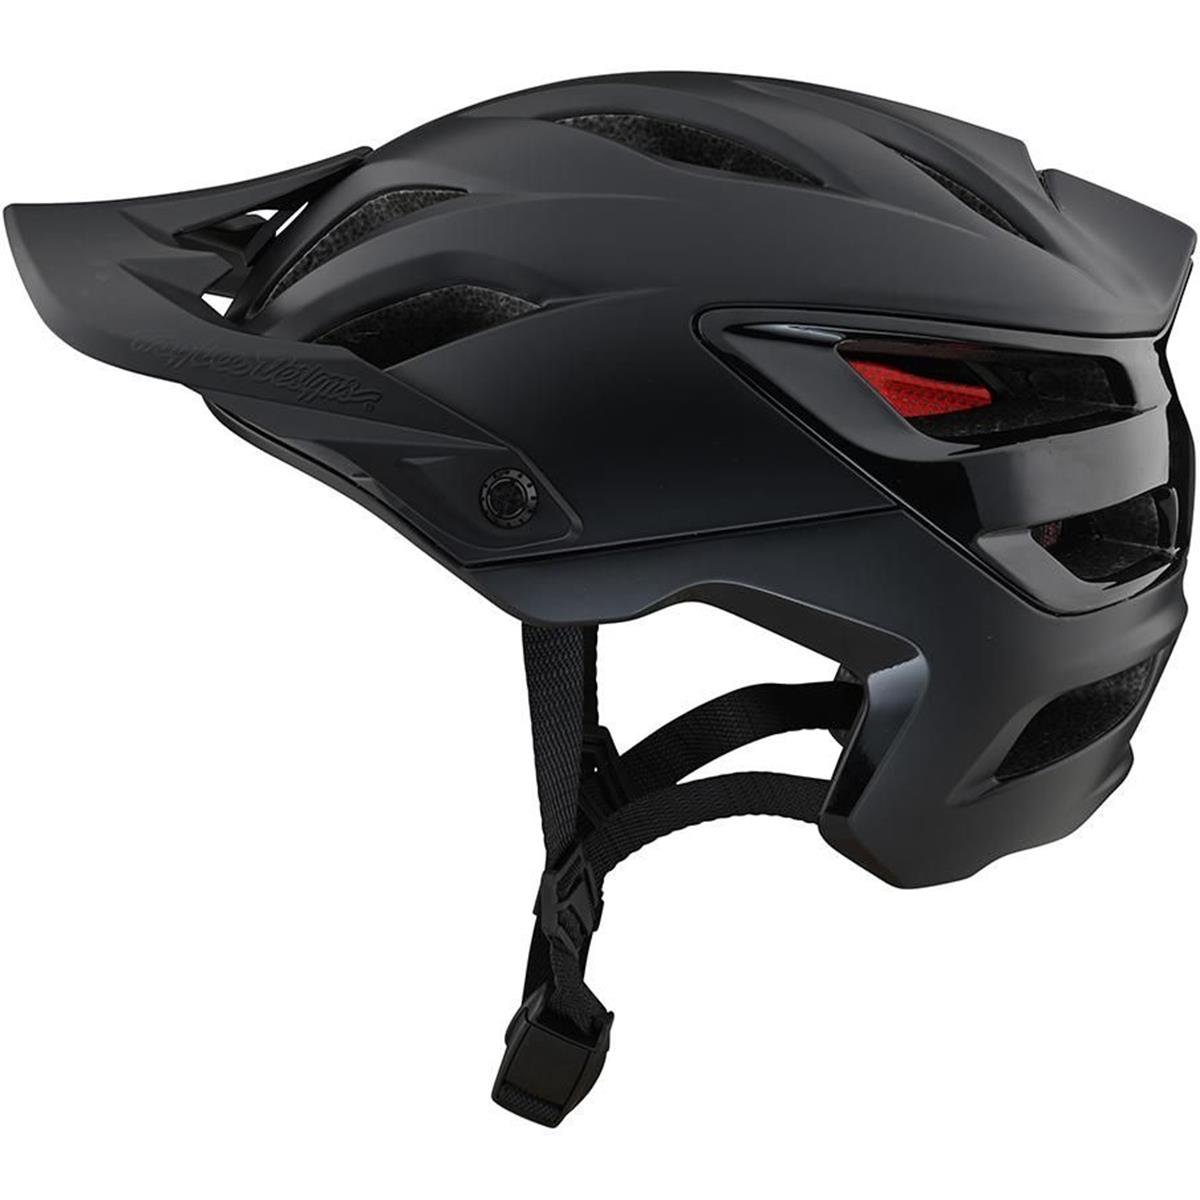 mei Groene achtergrond Geologie Troy Lee Designs Enduro MTB Helmet A3 Uno - Black | Maciag Offroad